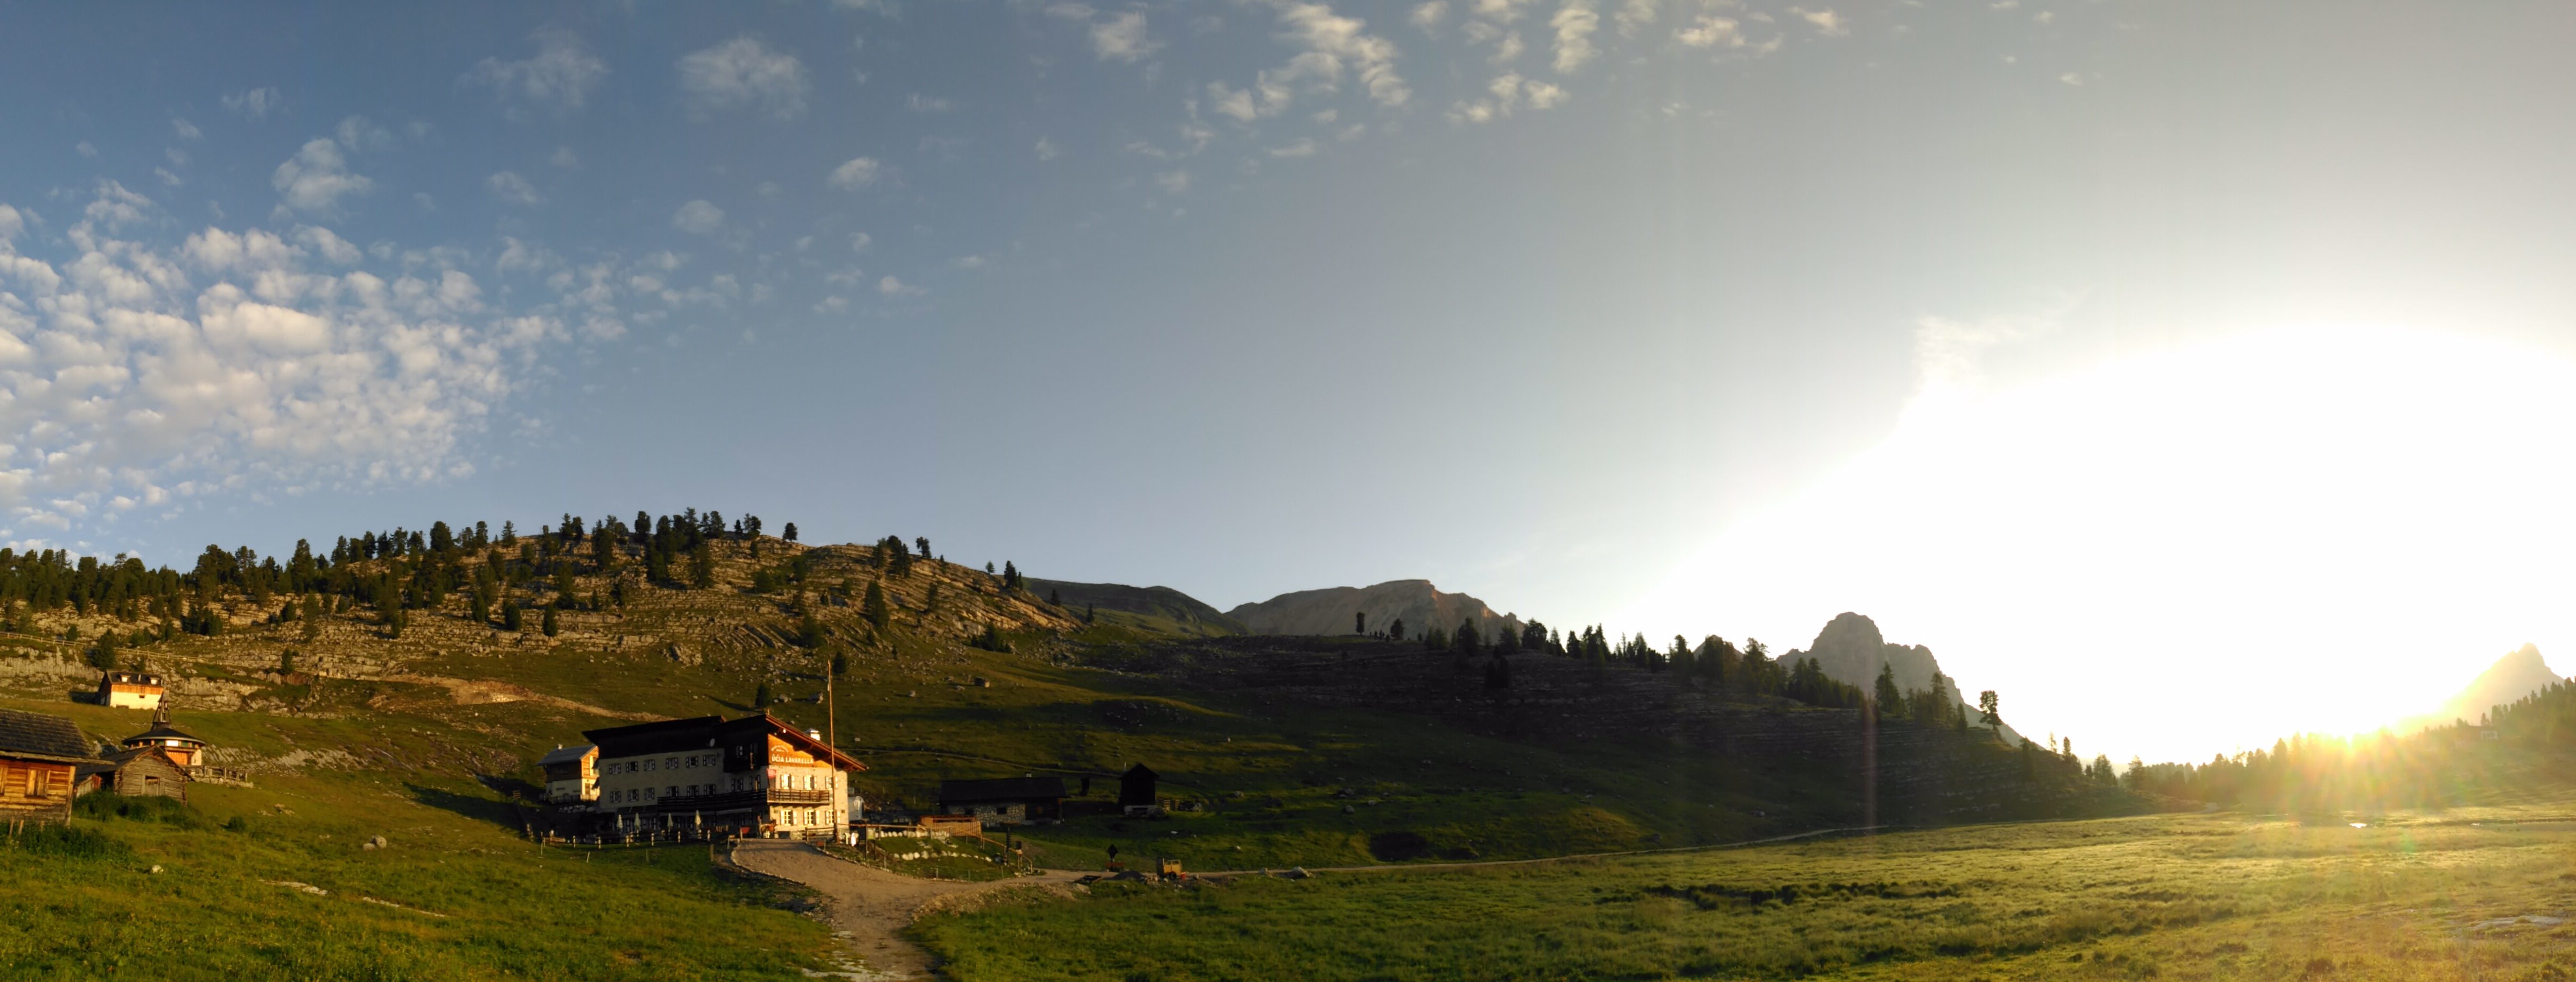 Fanes Dolomiti Unesco